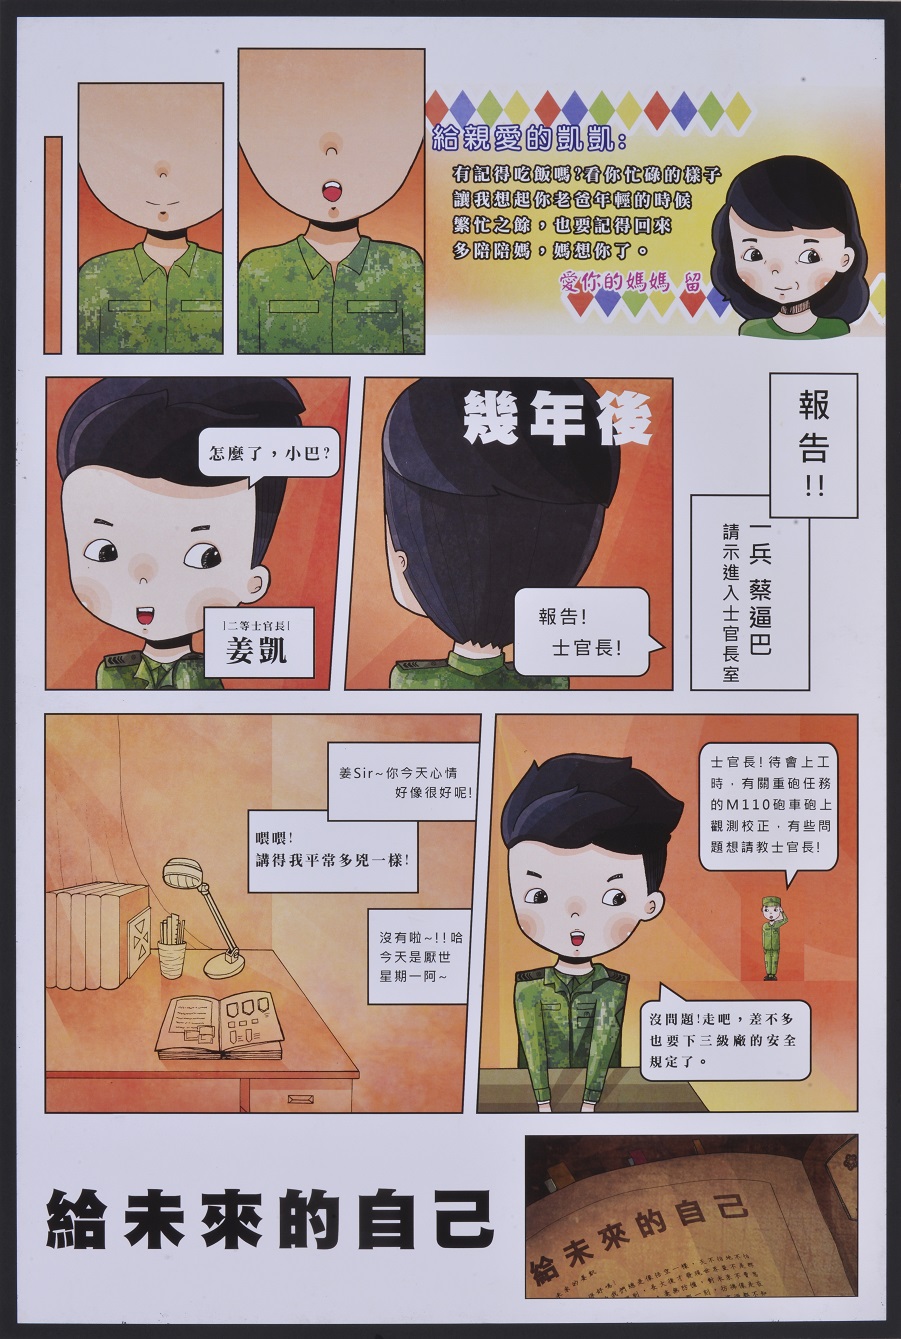 漫畫-國軍-銀像獎-范姜迪凱-致未來-10